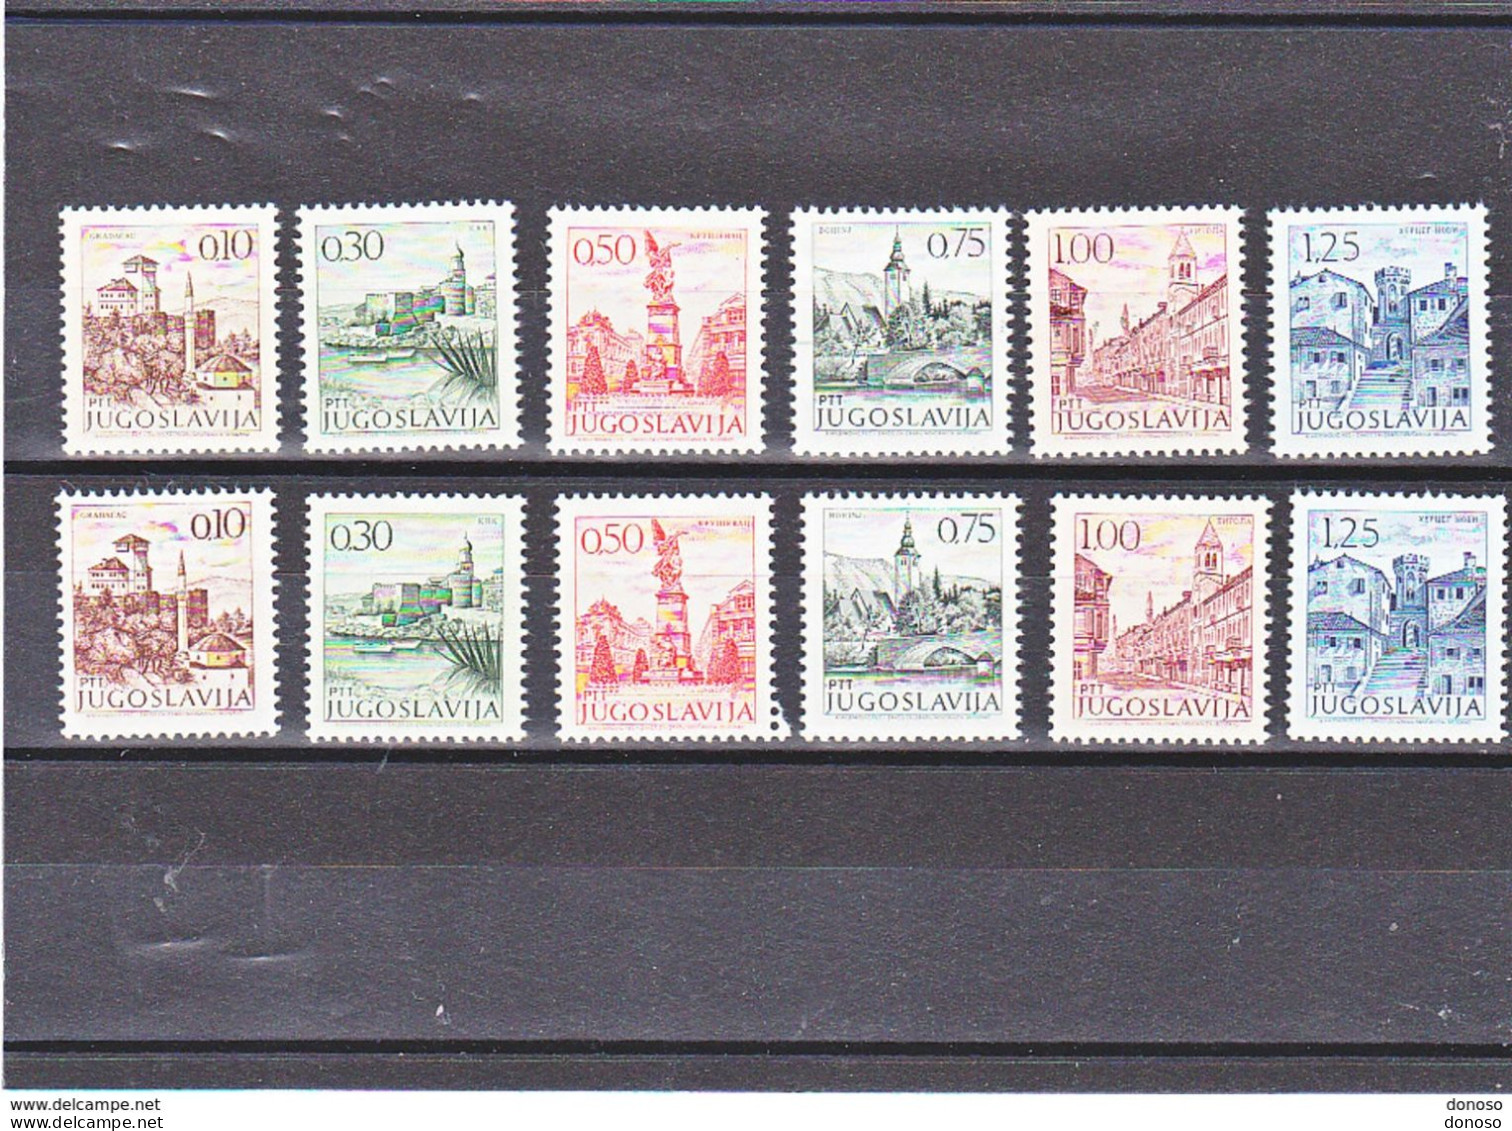 YOUGOSLAVIE 1971 TOURISME Yvert 1312A-1317 + 1312Aa-1317a NEUF** MNH Cote 20 Euros - Unused Stamps